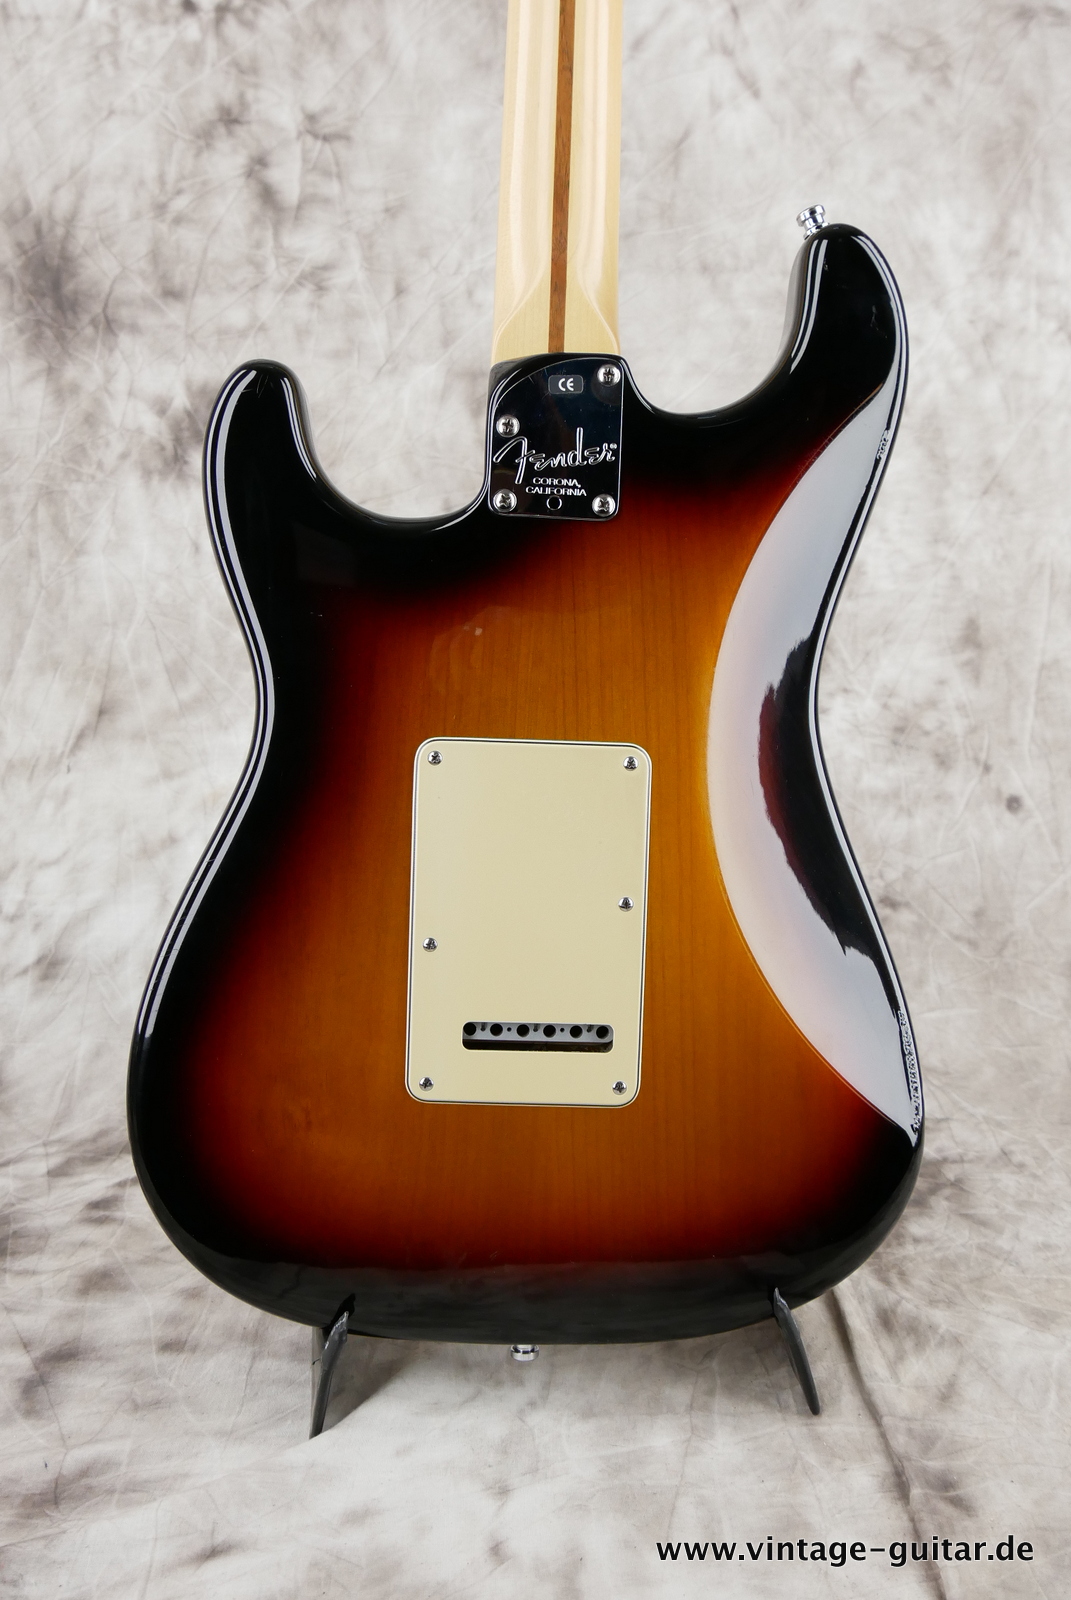 Fender_Startocaster_American_Deluxe_sunburst_samarium-cobalt-noiseless_tremolo_2005-008.JPG